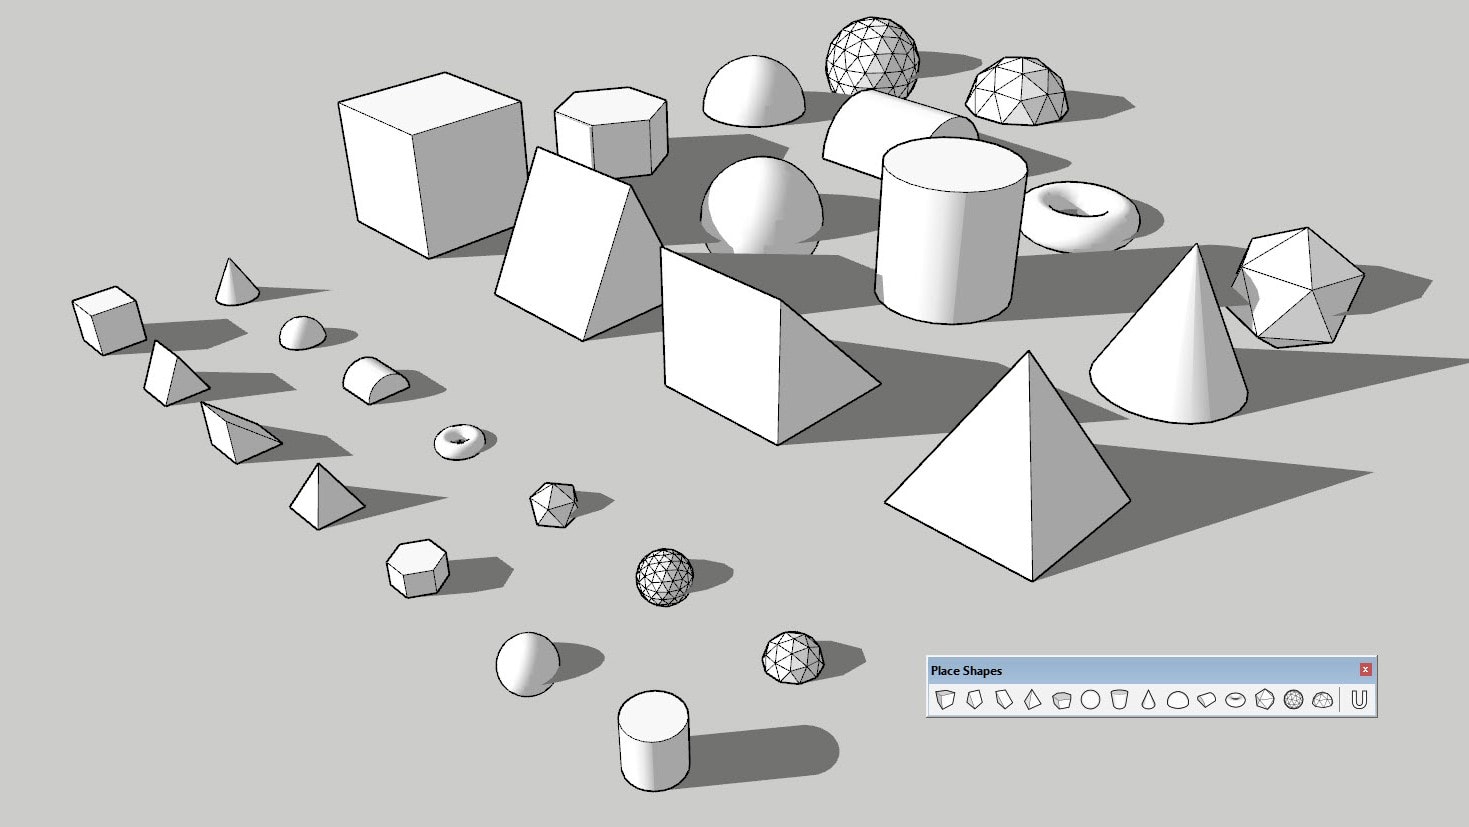 Primitive 3D modeling shapes